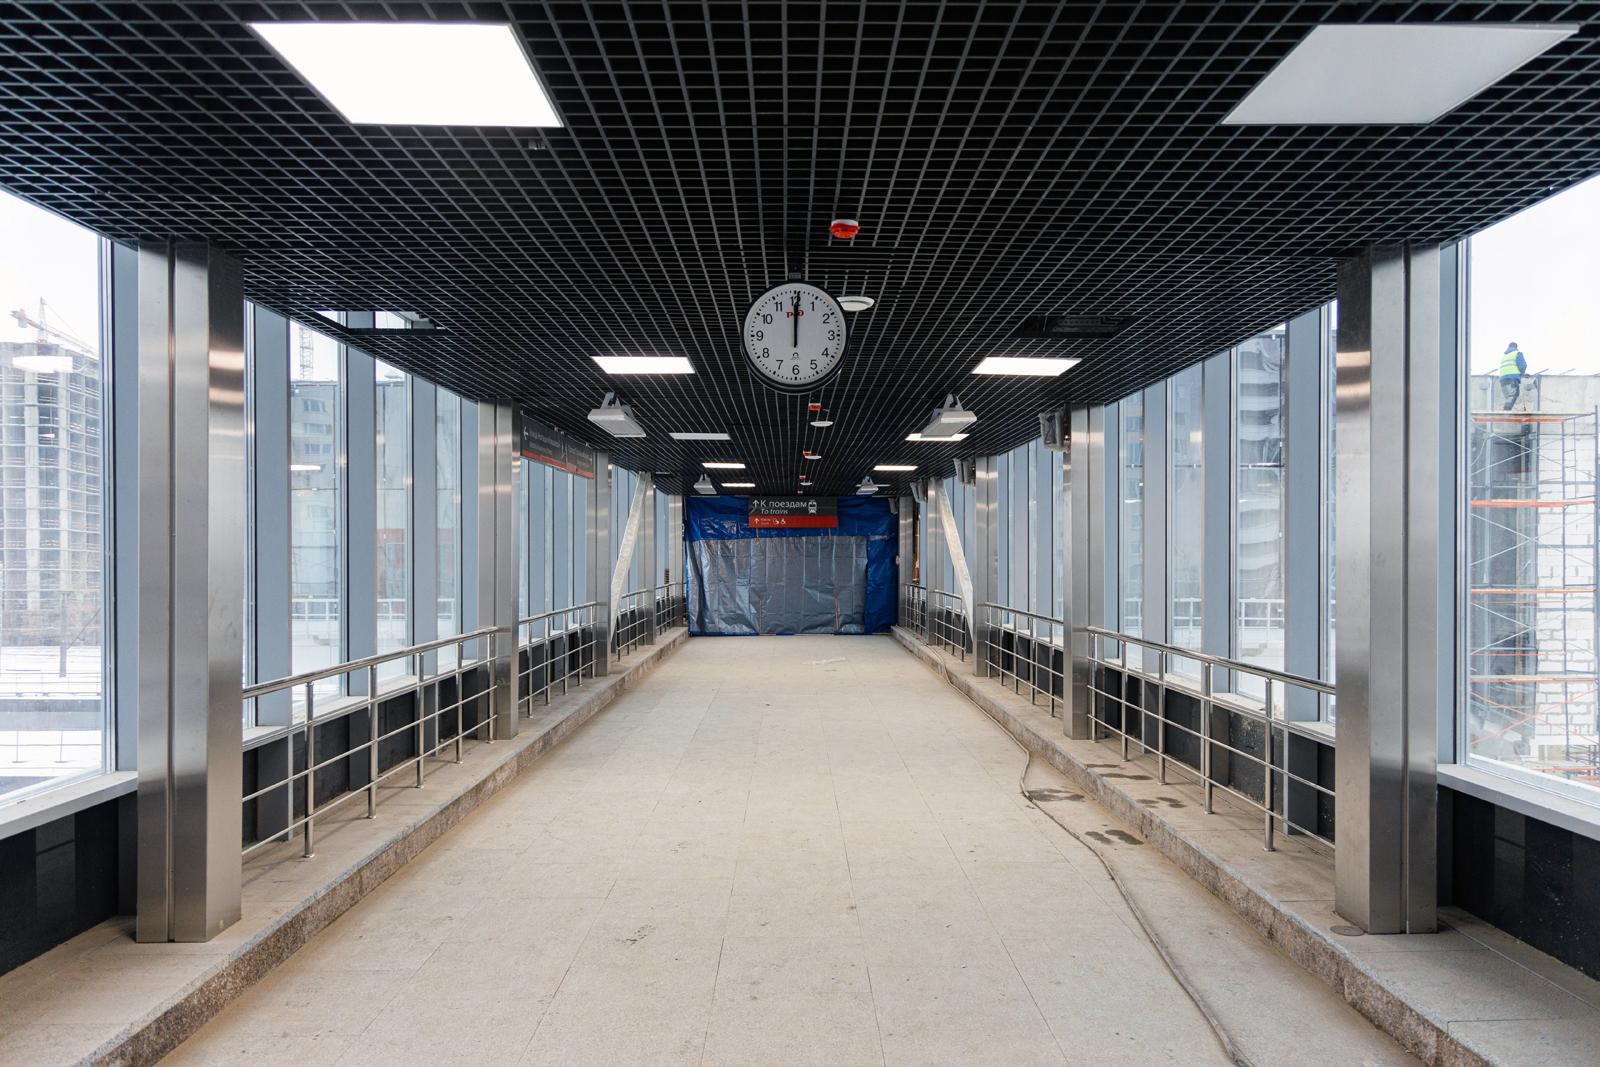 Характерная особенность зданий новых московских транспортных узлов – простор и хороший доступ света